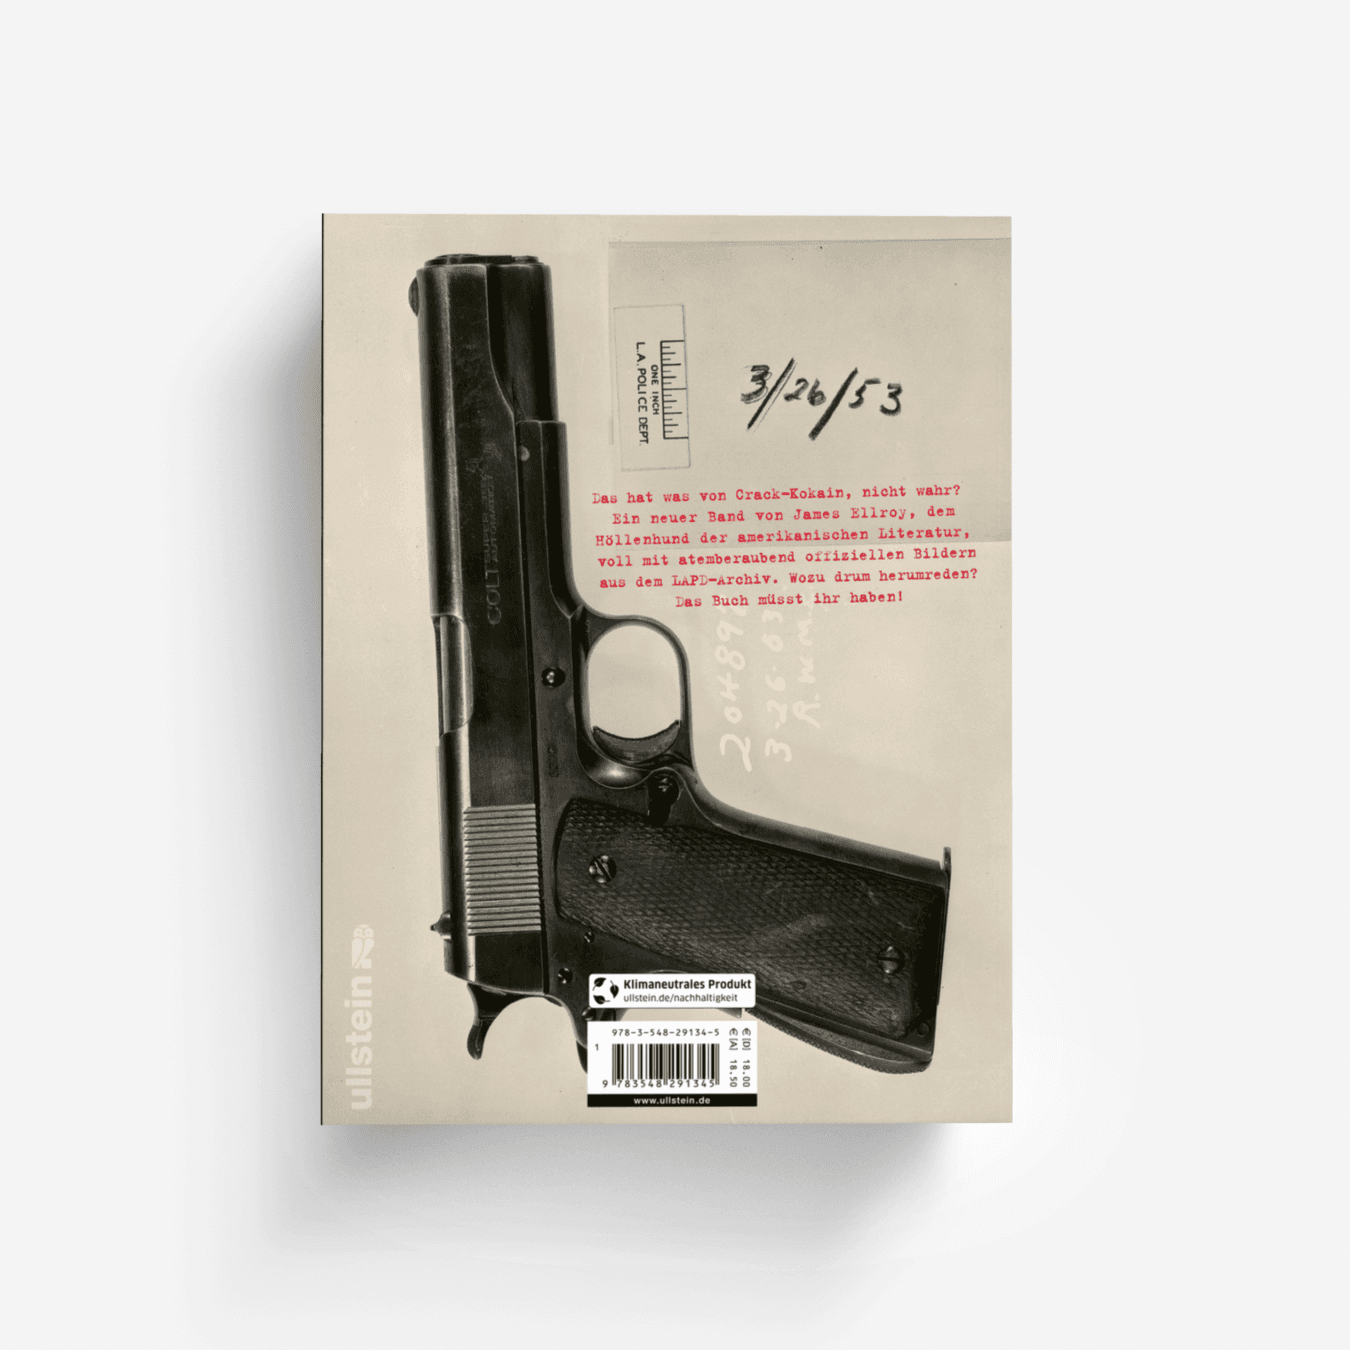 Buchcover von LAPD ’53